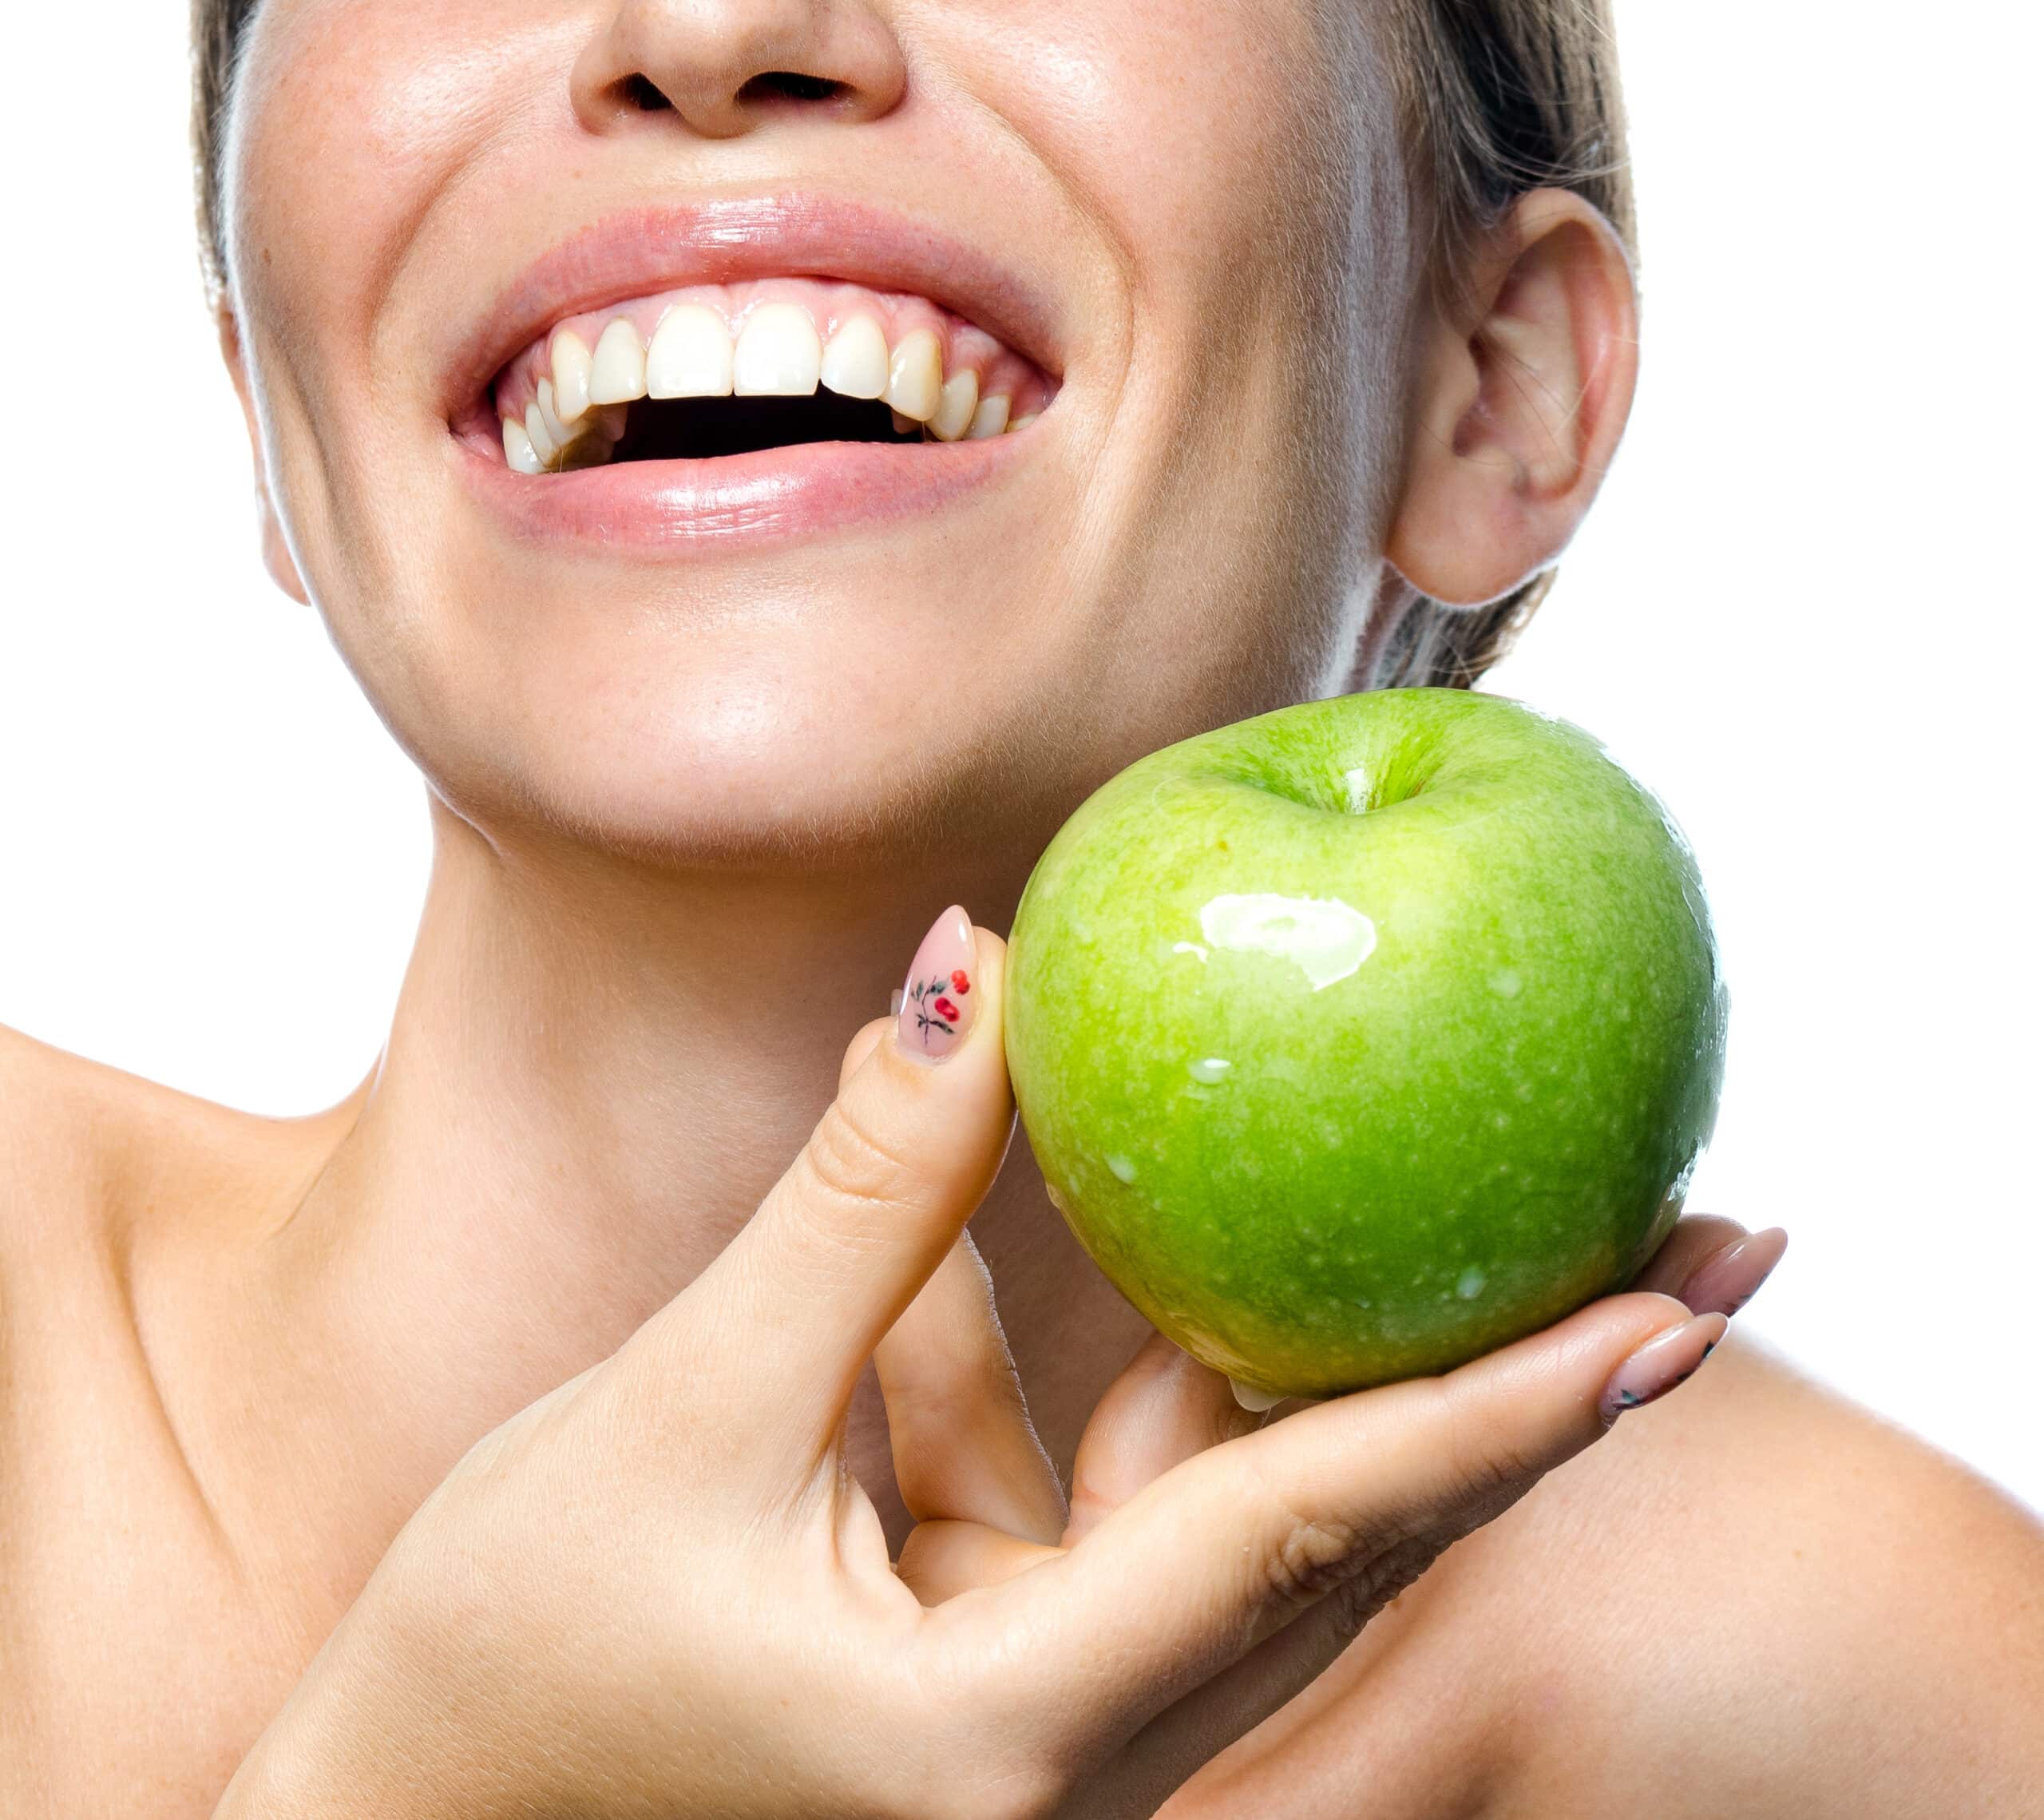 Kobieta uzywajaca wegańskich kosmetyków trzyma jabłko w dłoni